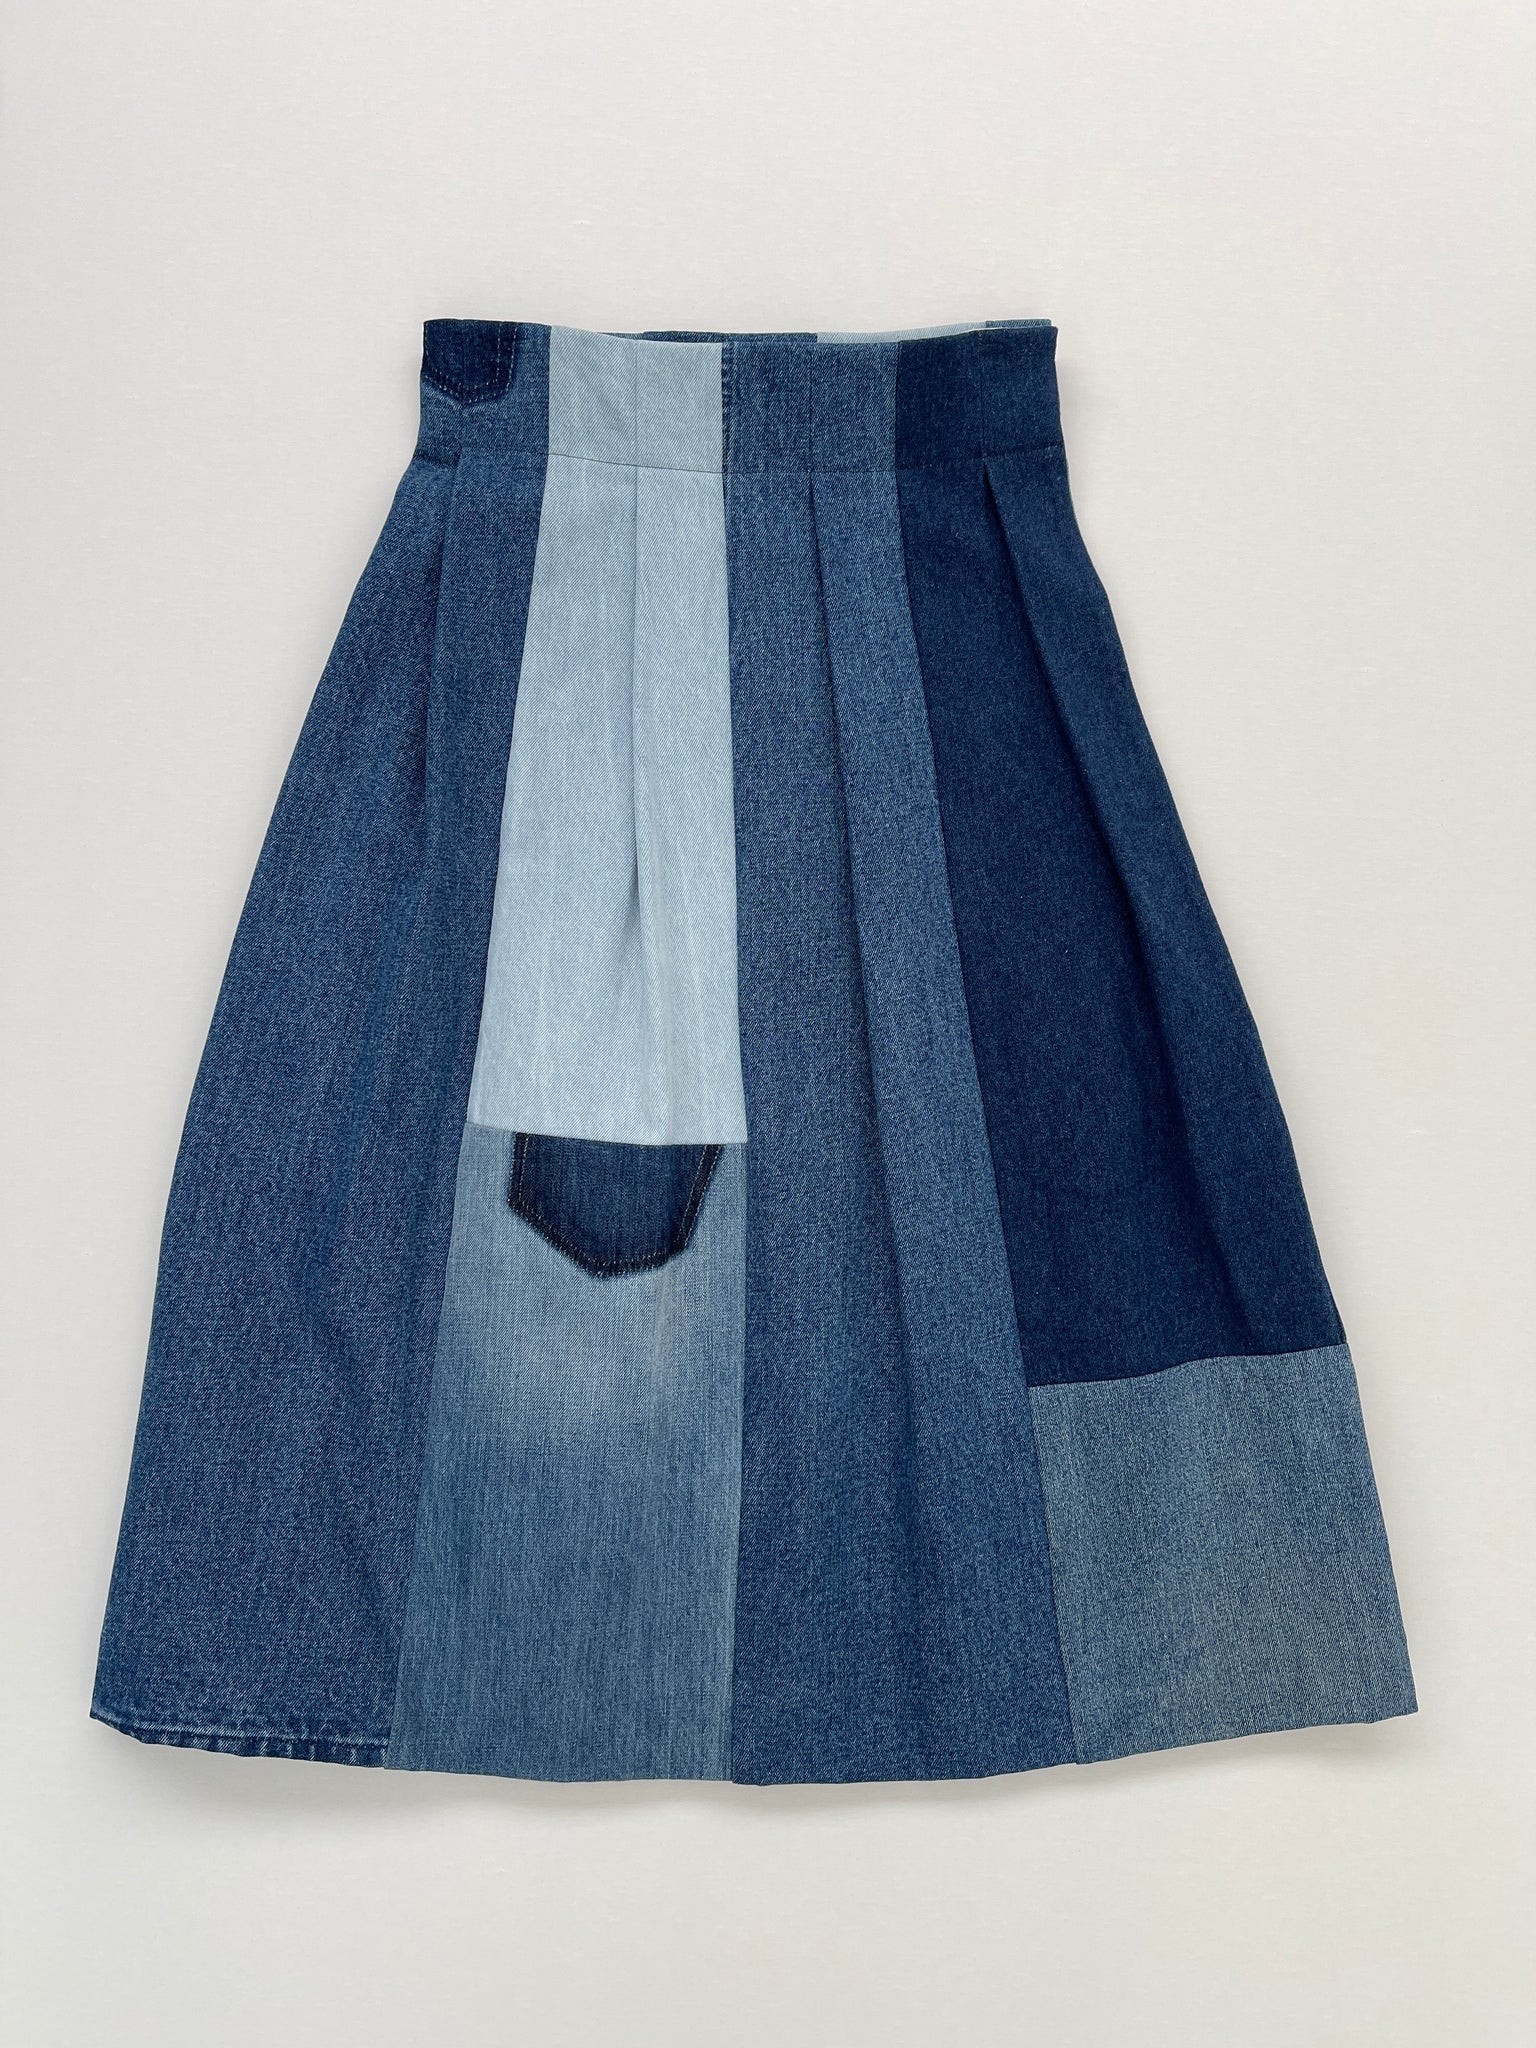 Crofter skirt - blue denim S-M